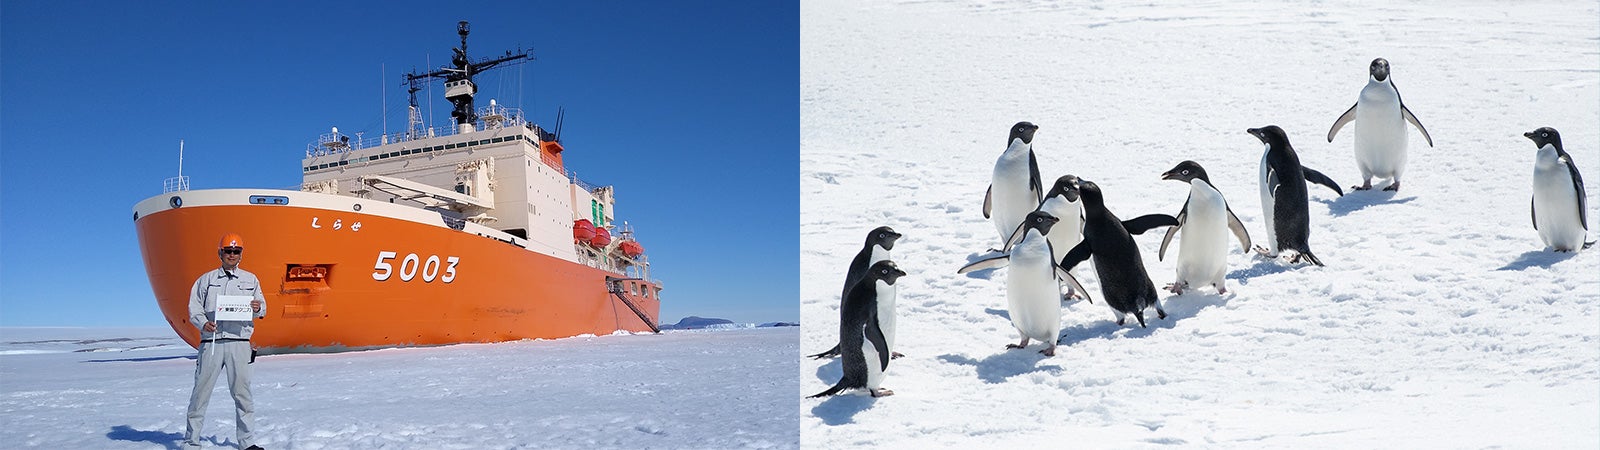 第61次南極地域観測隊に参加